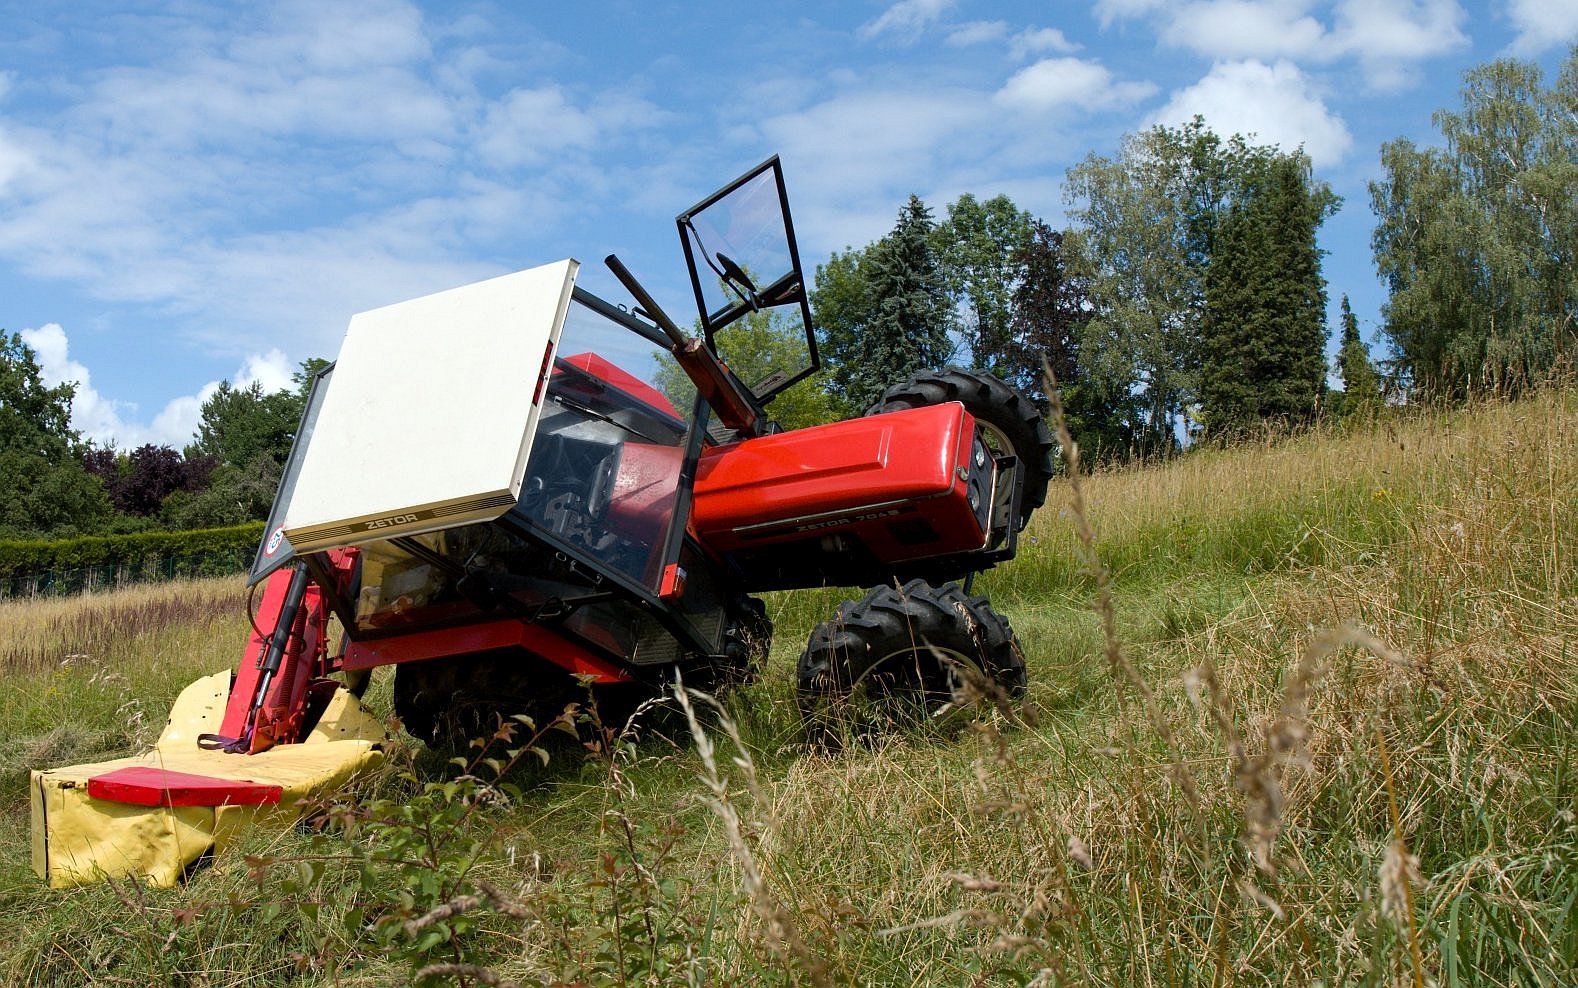 převrácený traktor na svahu, Zetor, louka / foto Michal Němeček